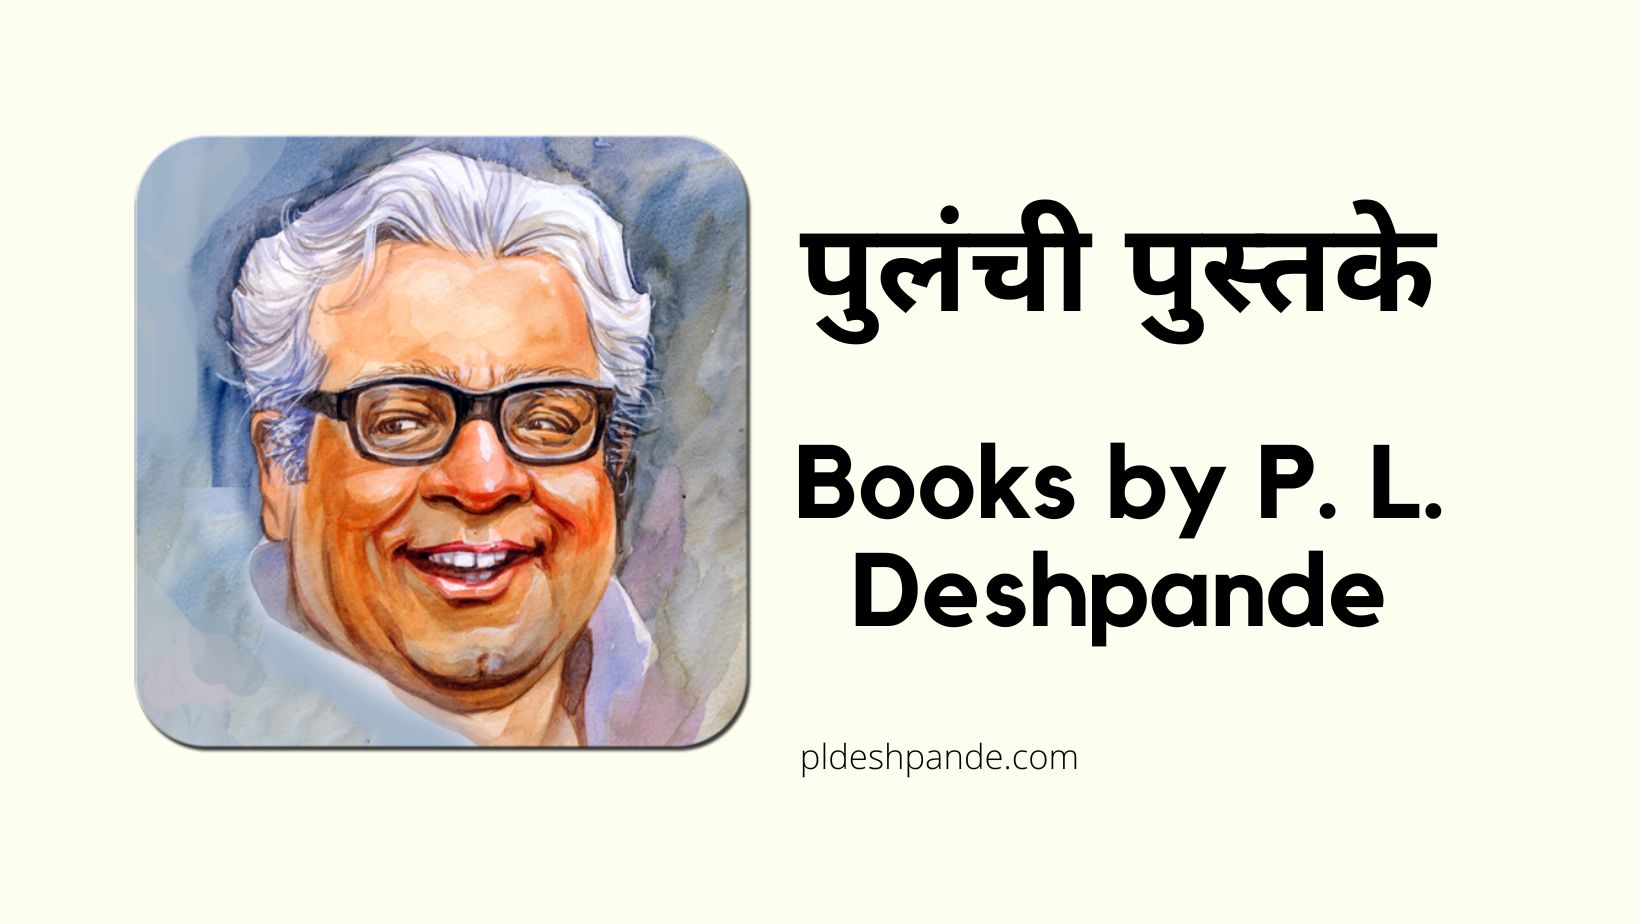 Books by P. L. Deshpande